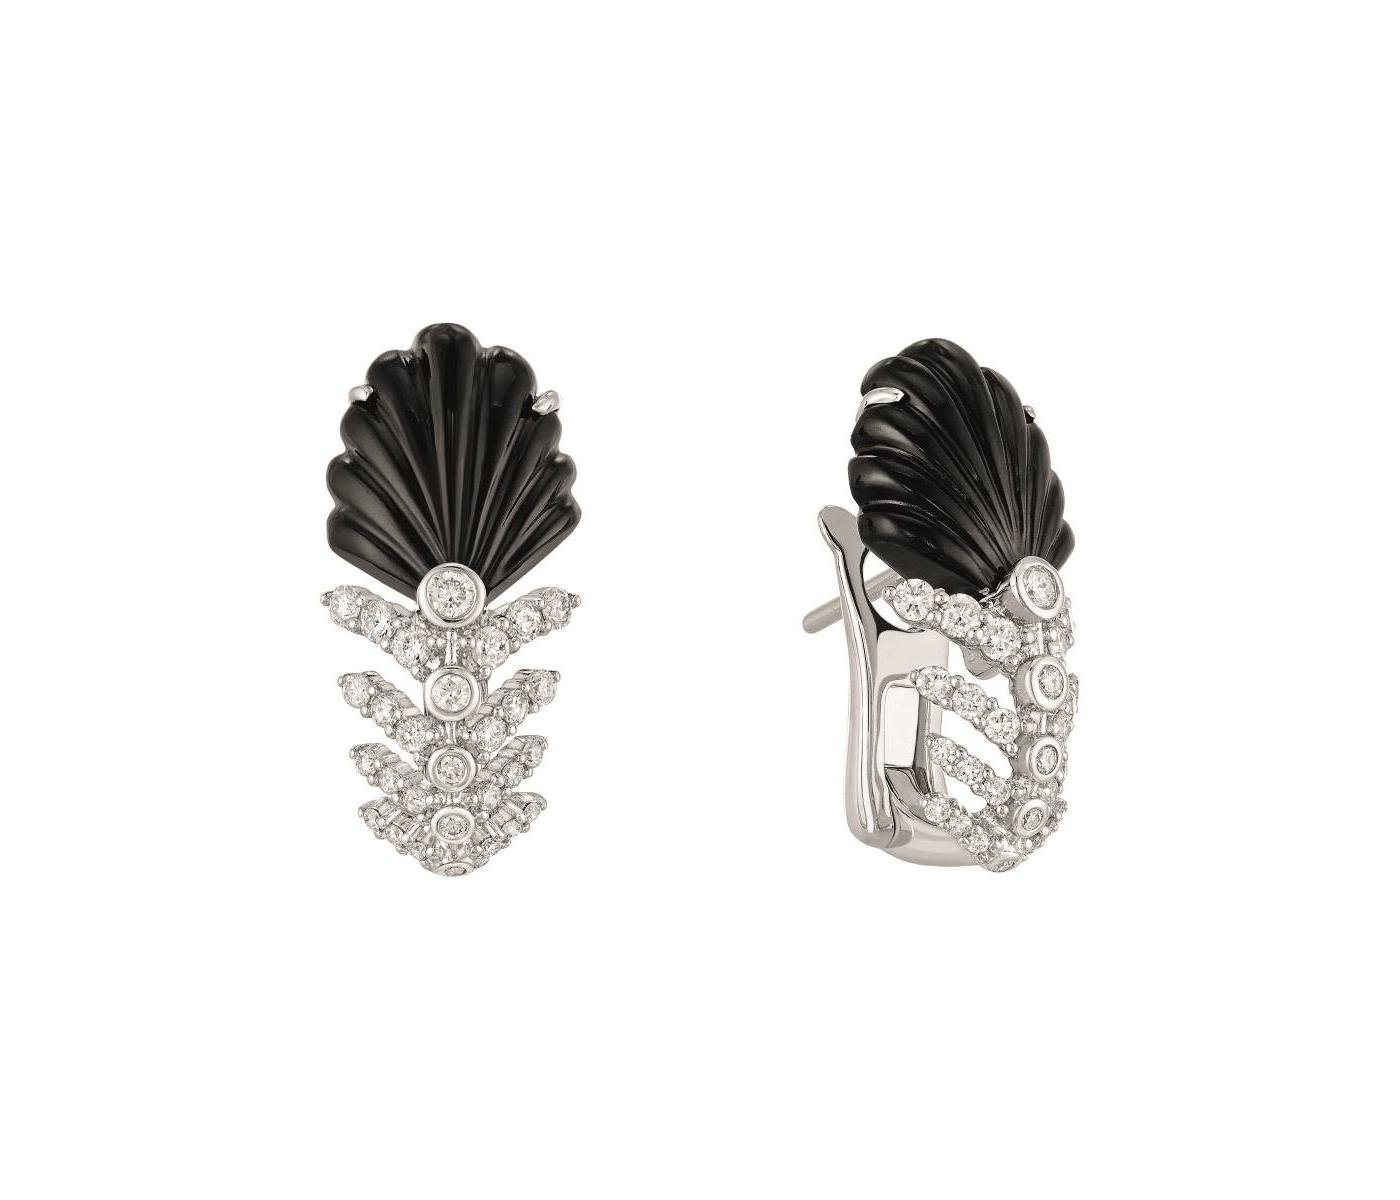 Earrings by Lalique